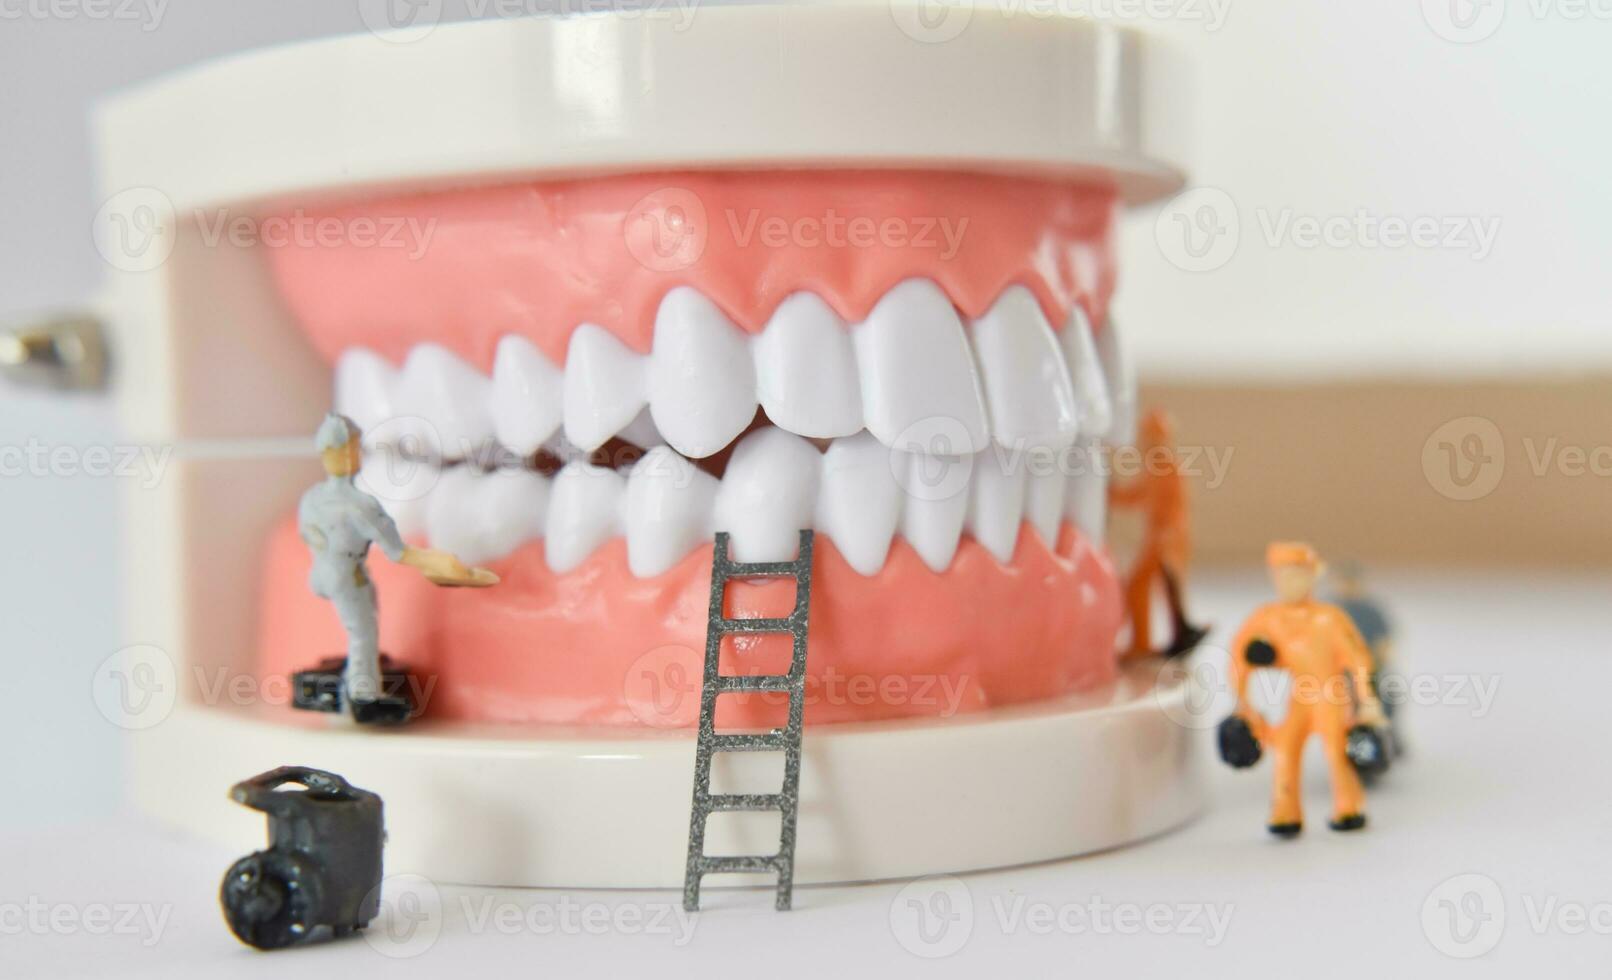 persone in miniatura per riparare un dente o un lavoratore di piccola figura che pulisce il modello di dente come medico e sanitario. foto